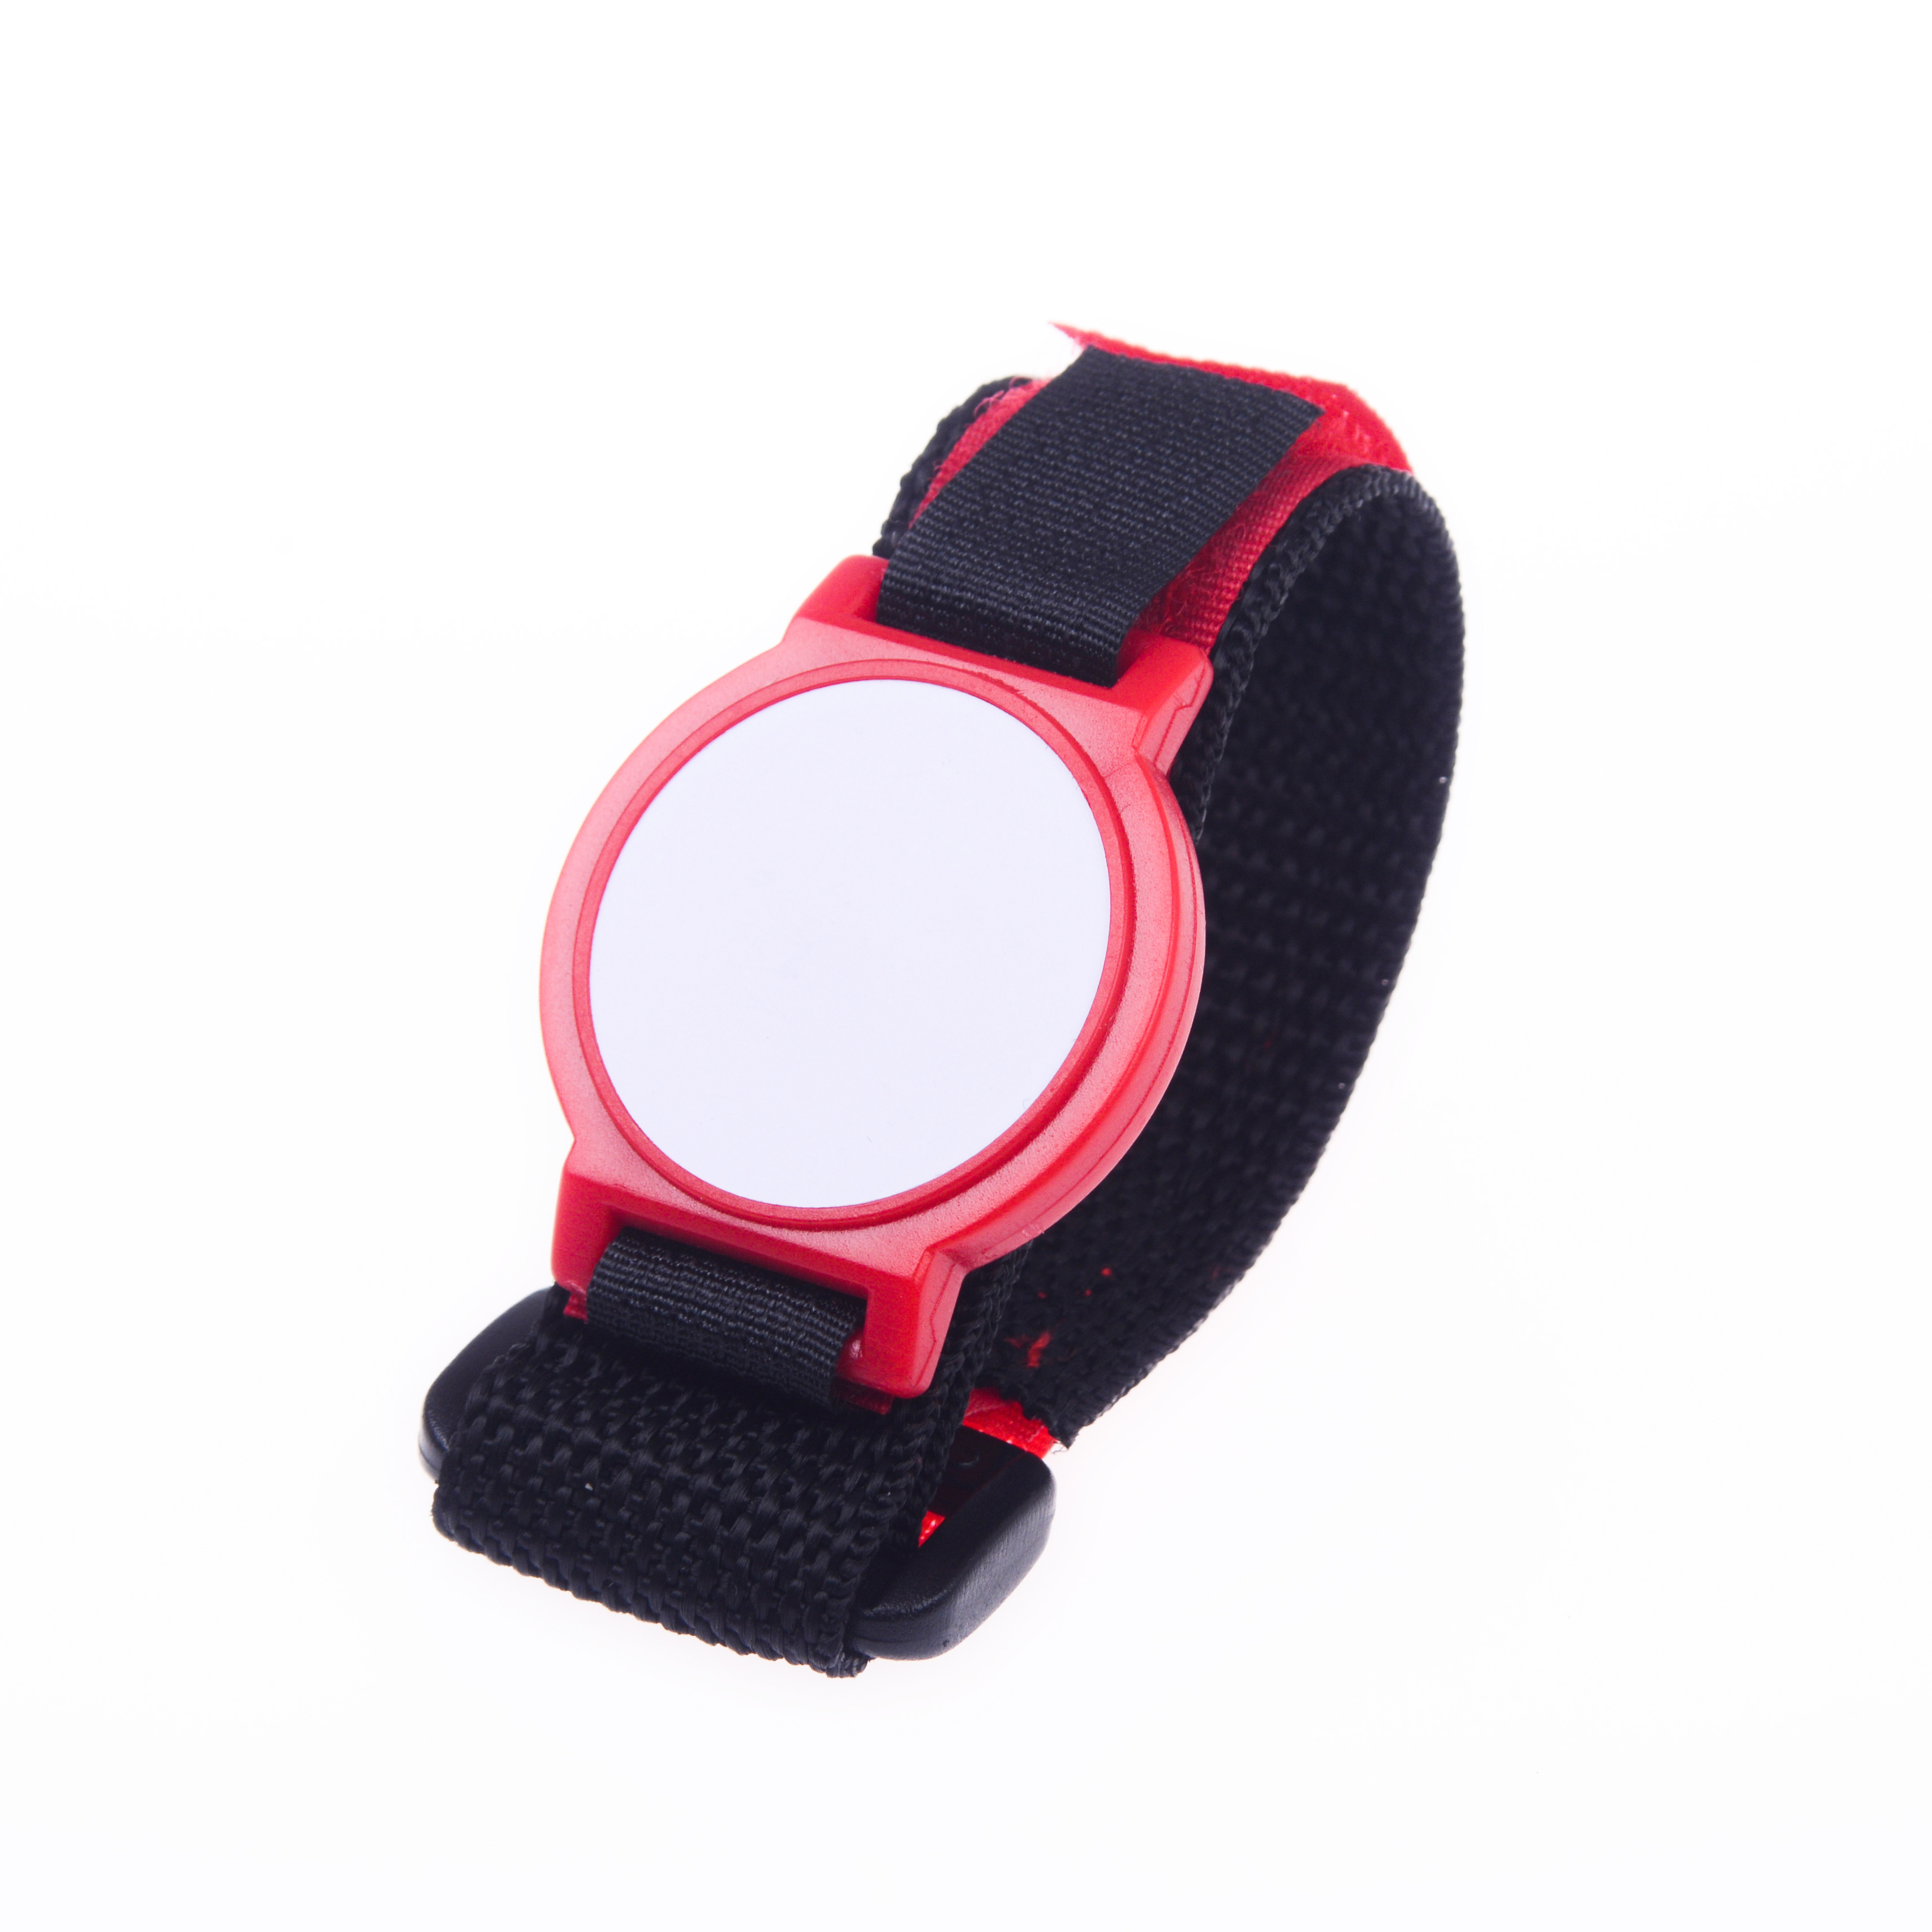 NW05 RFID Watch Hook and Loop Wristband, hoop and loop nfc bracelet